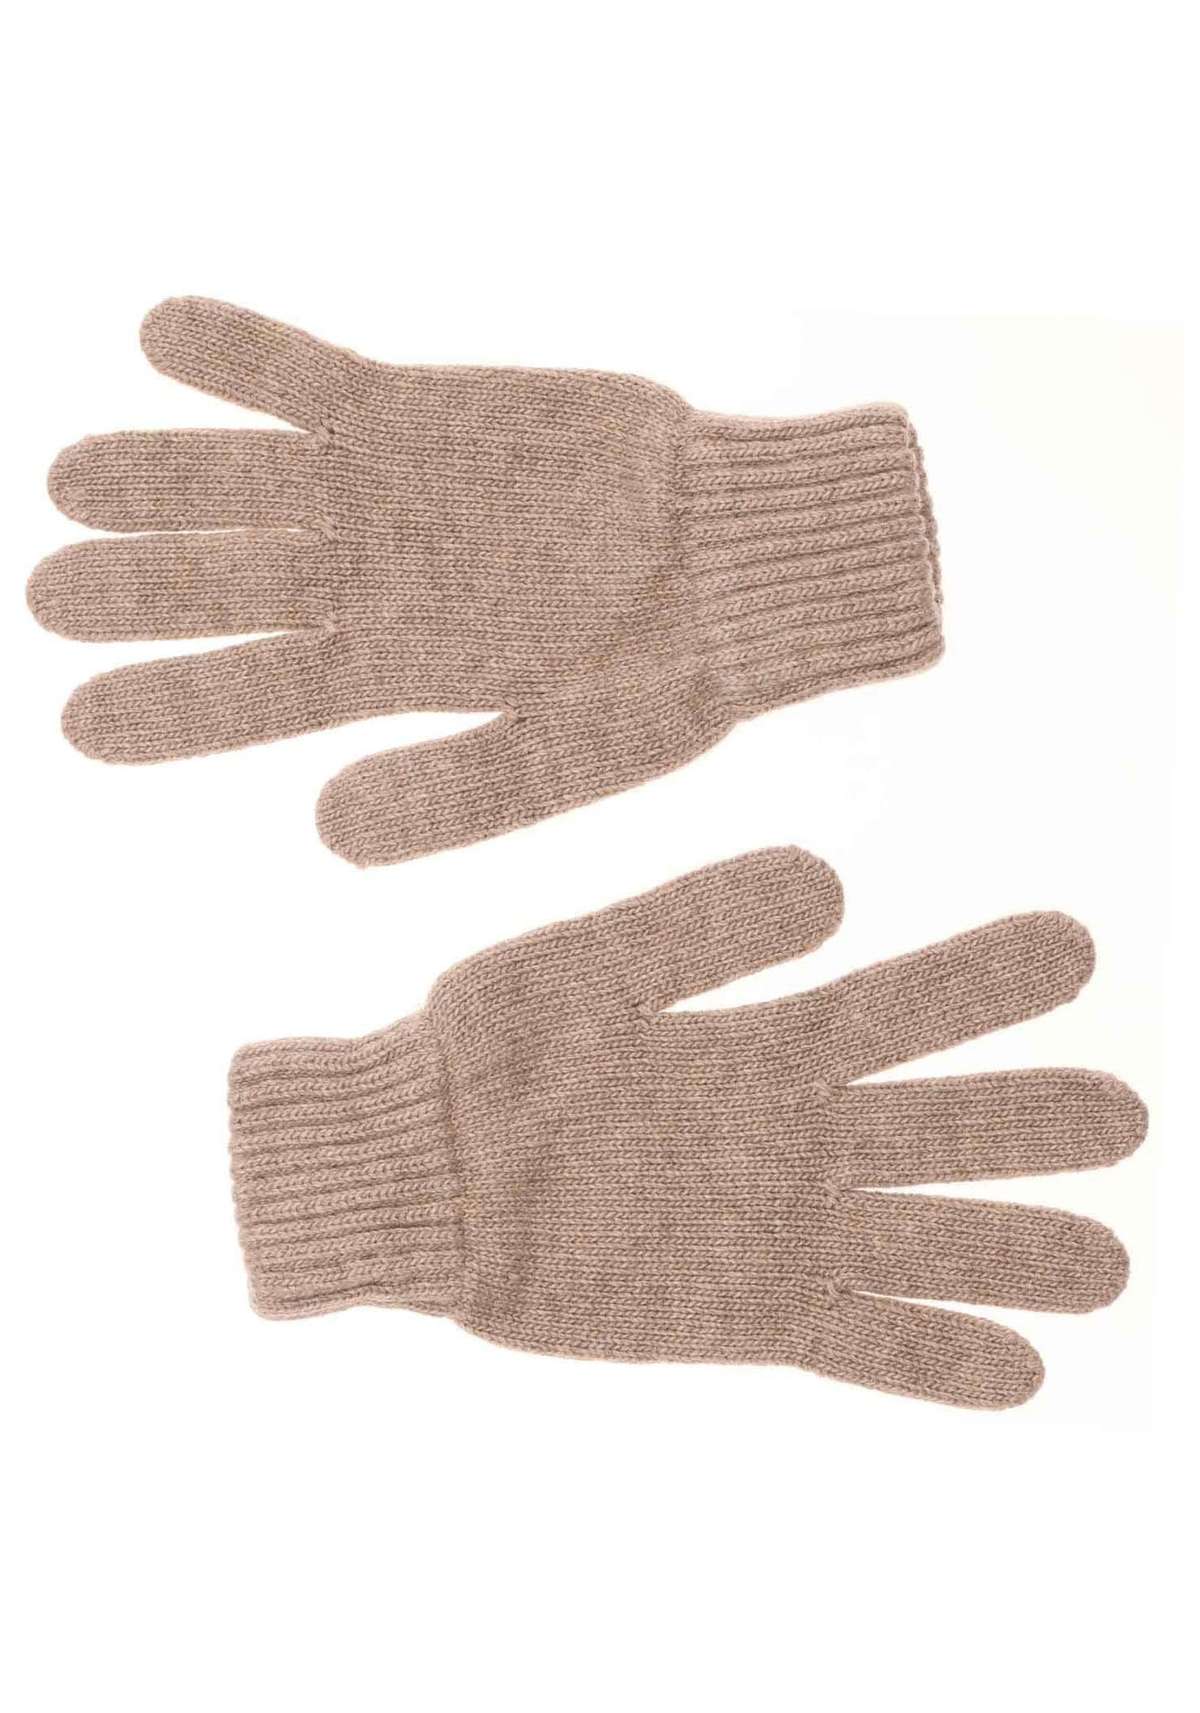 Вязаные перчатки (2 шт.) с содержанием шерсти и кашемира.